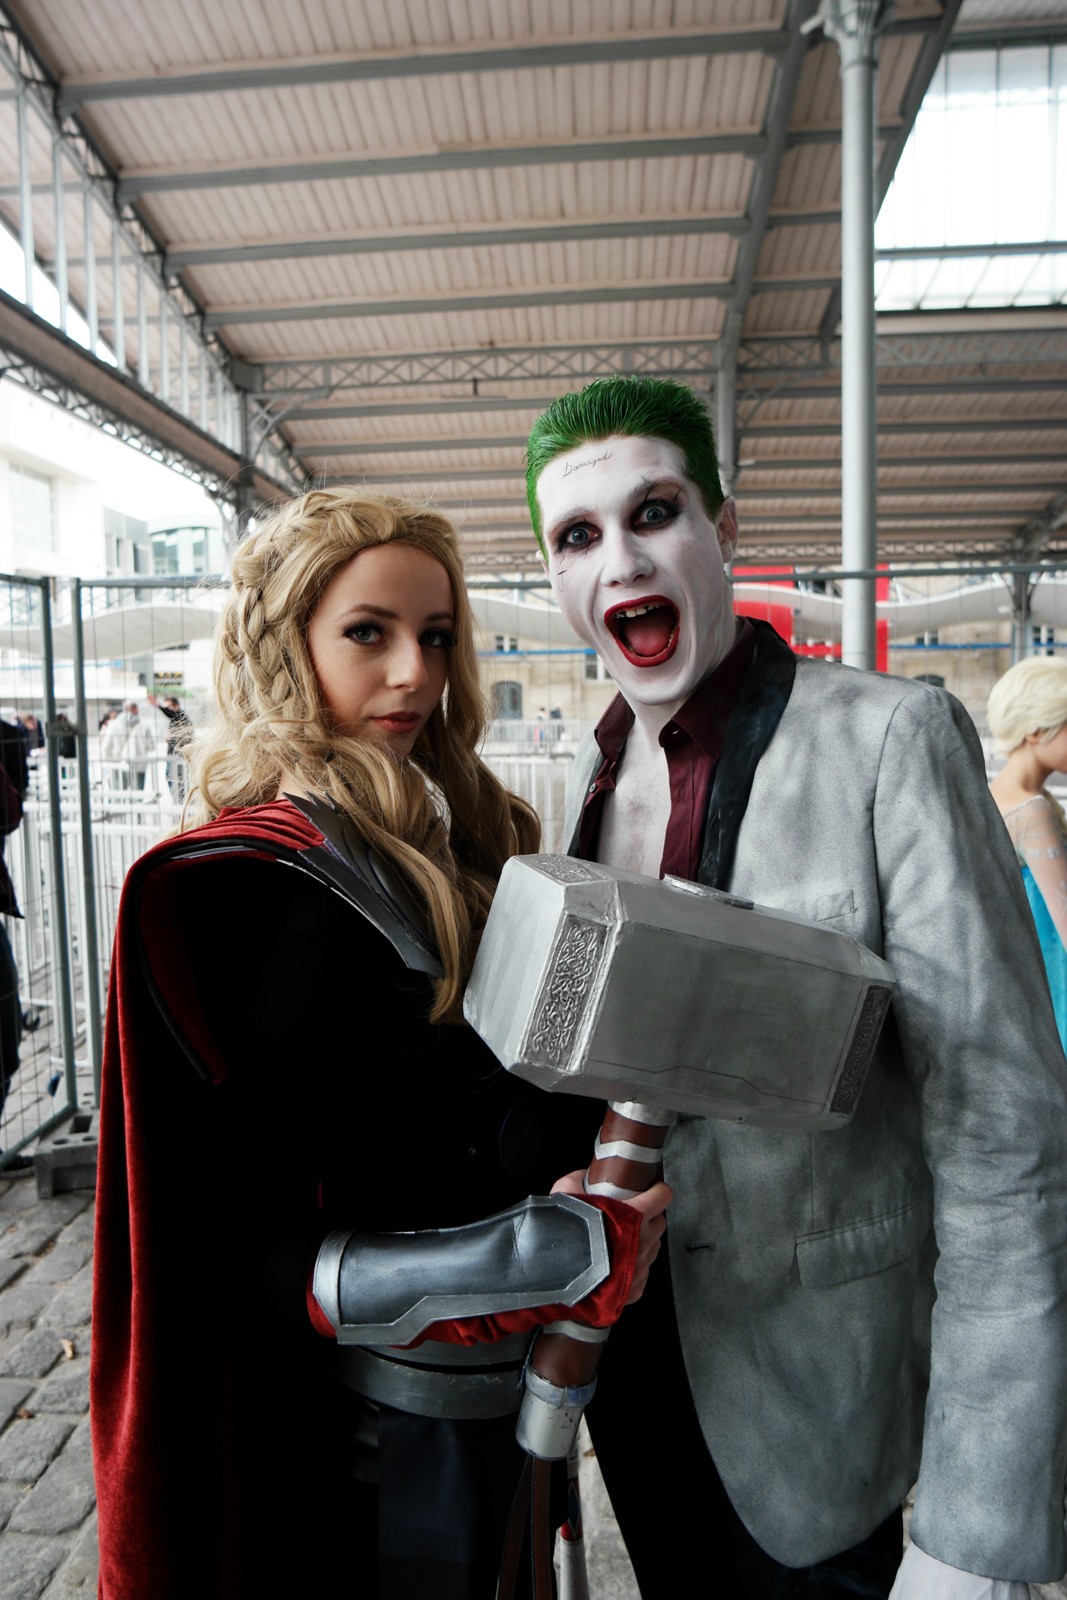 Joker and Thor girl Comic Con Paris festival 2015 Grande Halle de la Villette cosplay batman photo united states of paris blog